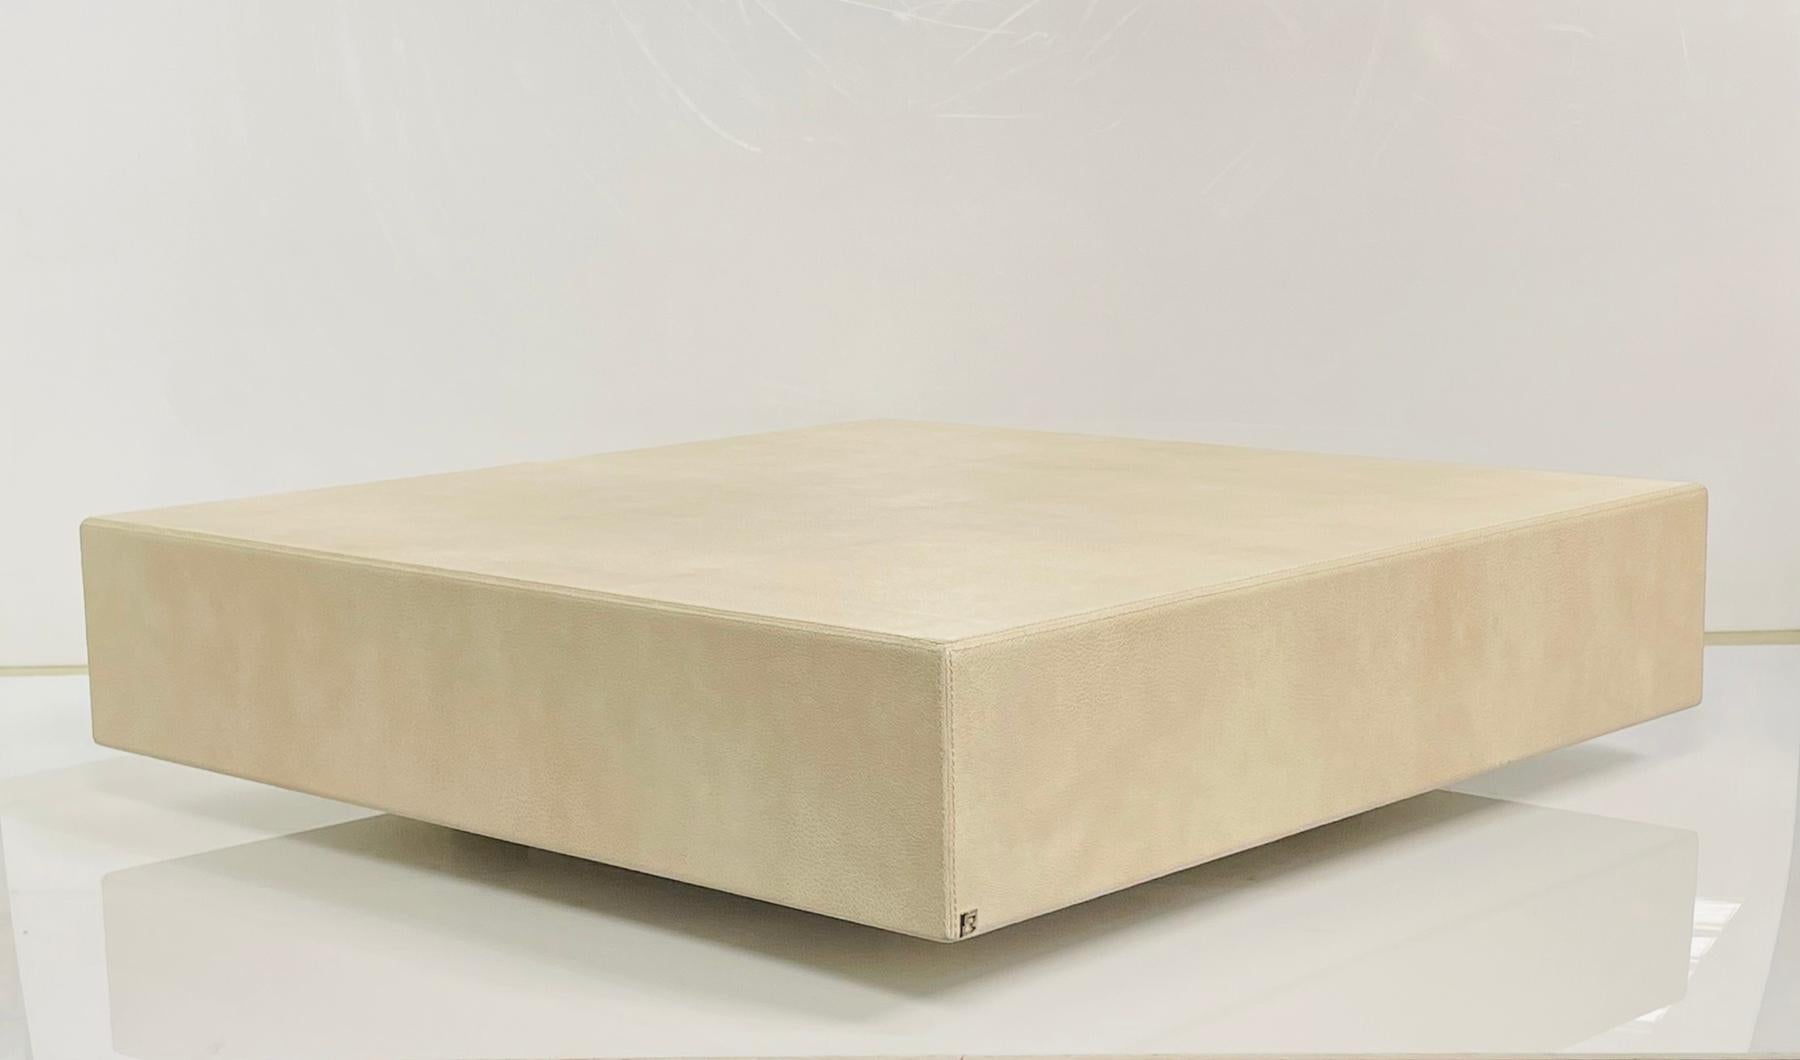 Voici la luxueuse table basse gaufrée en cuir de Fendi, le complément idéal de tout salon élégant. Fabriquée à partir de matériaux nobles, cette table basse affiche un design épuré et sophistiqué qui rehaussera l'aspect de votre espace. 

Dotée d'un